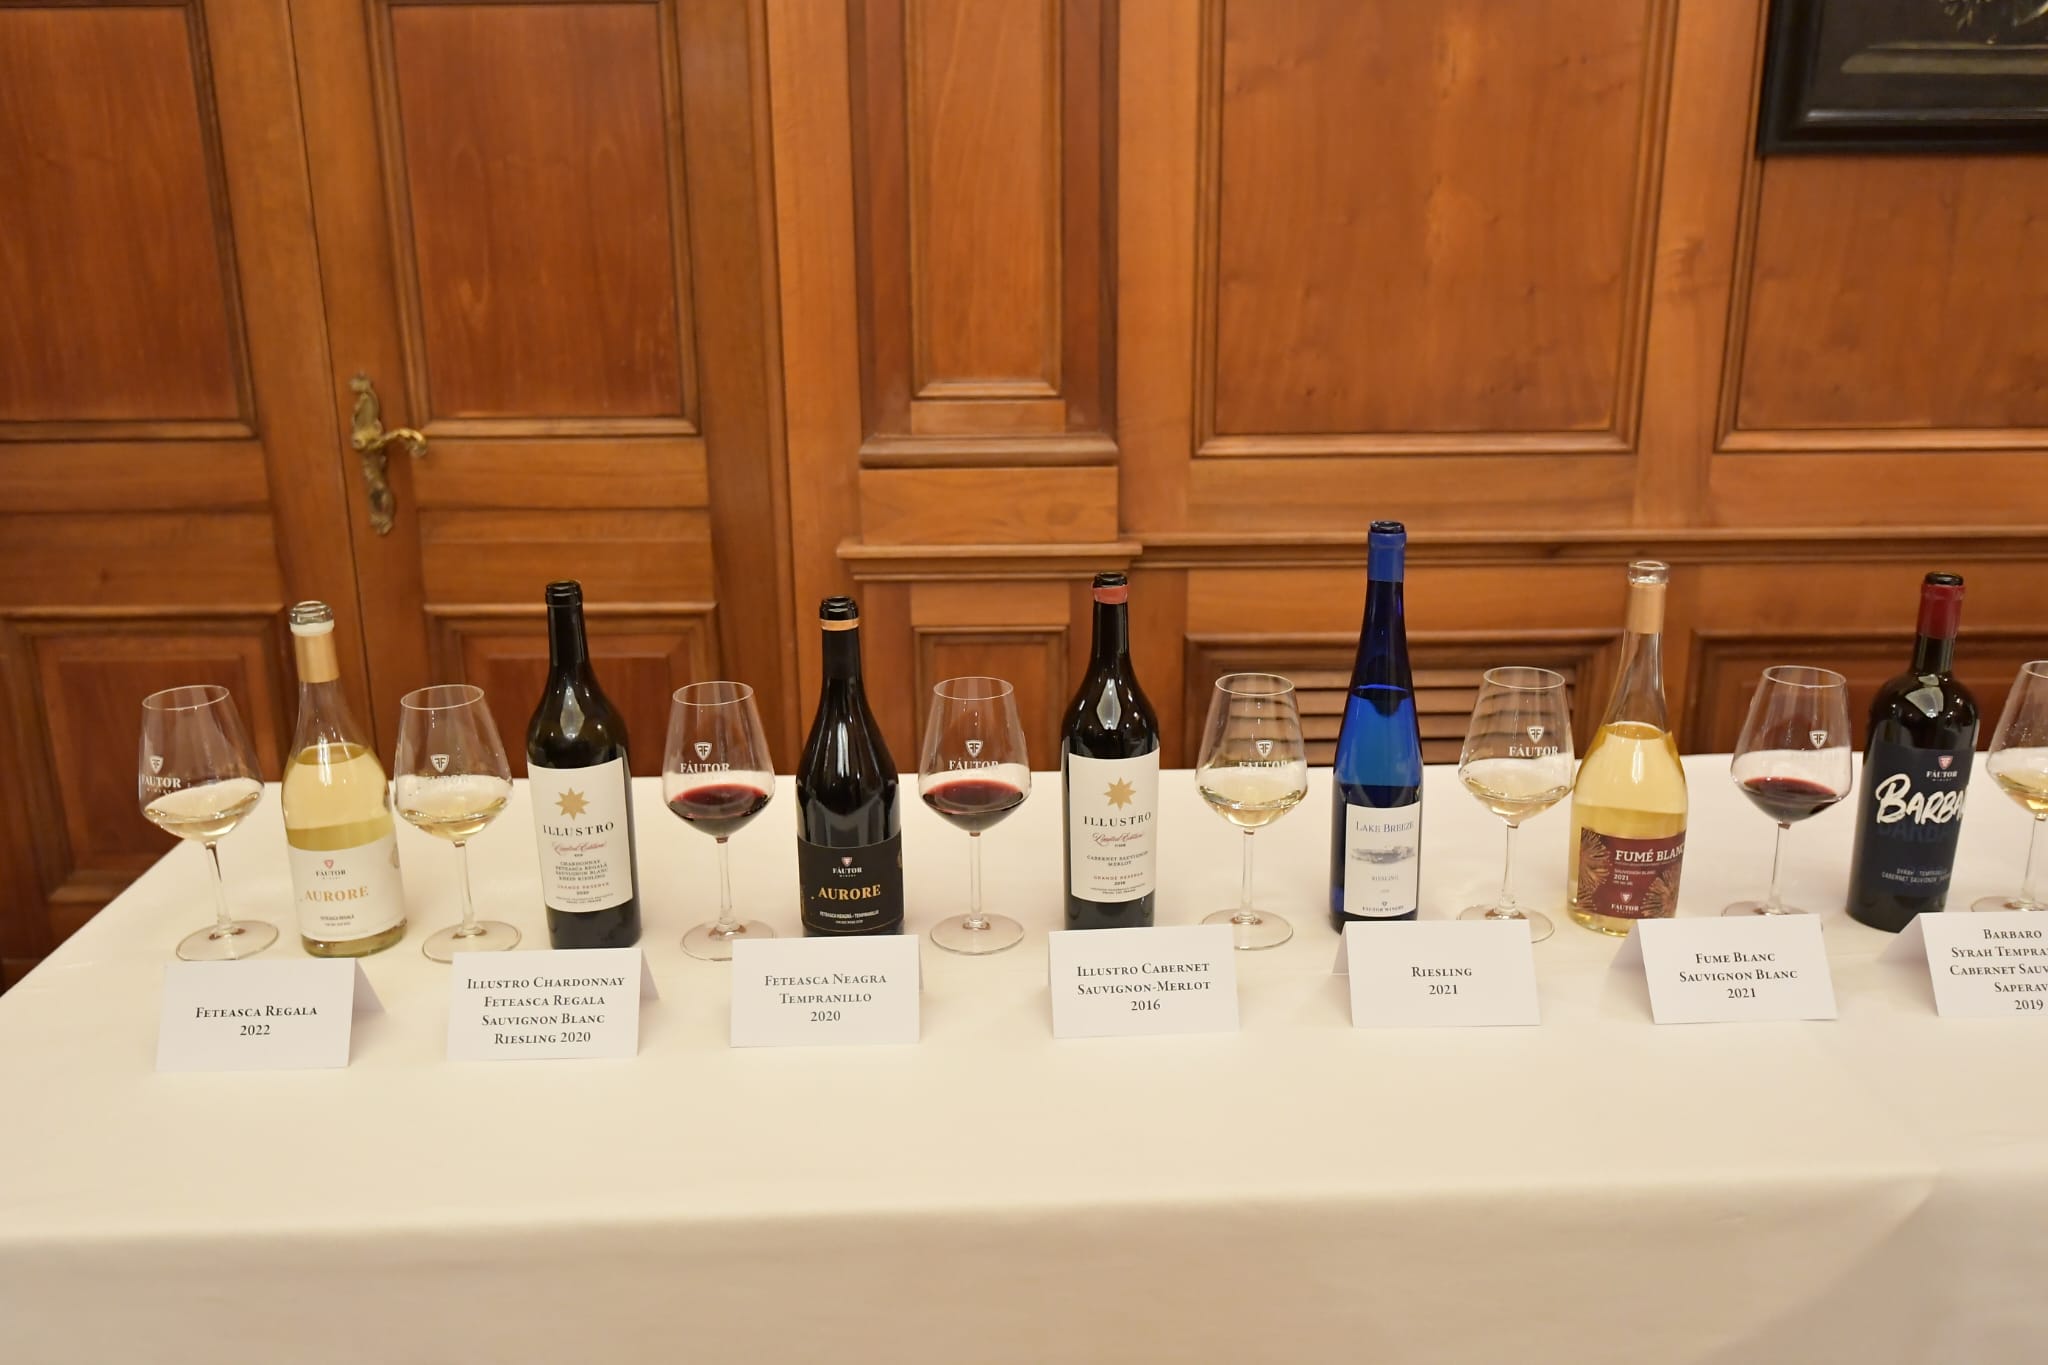 FOTO Degustare de vinuri moldovenești la Camera Deputaților din Roma: 100 de parlamentari și oameni de afaceri au savurat băuturile